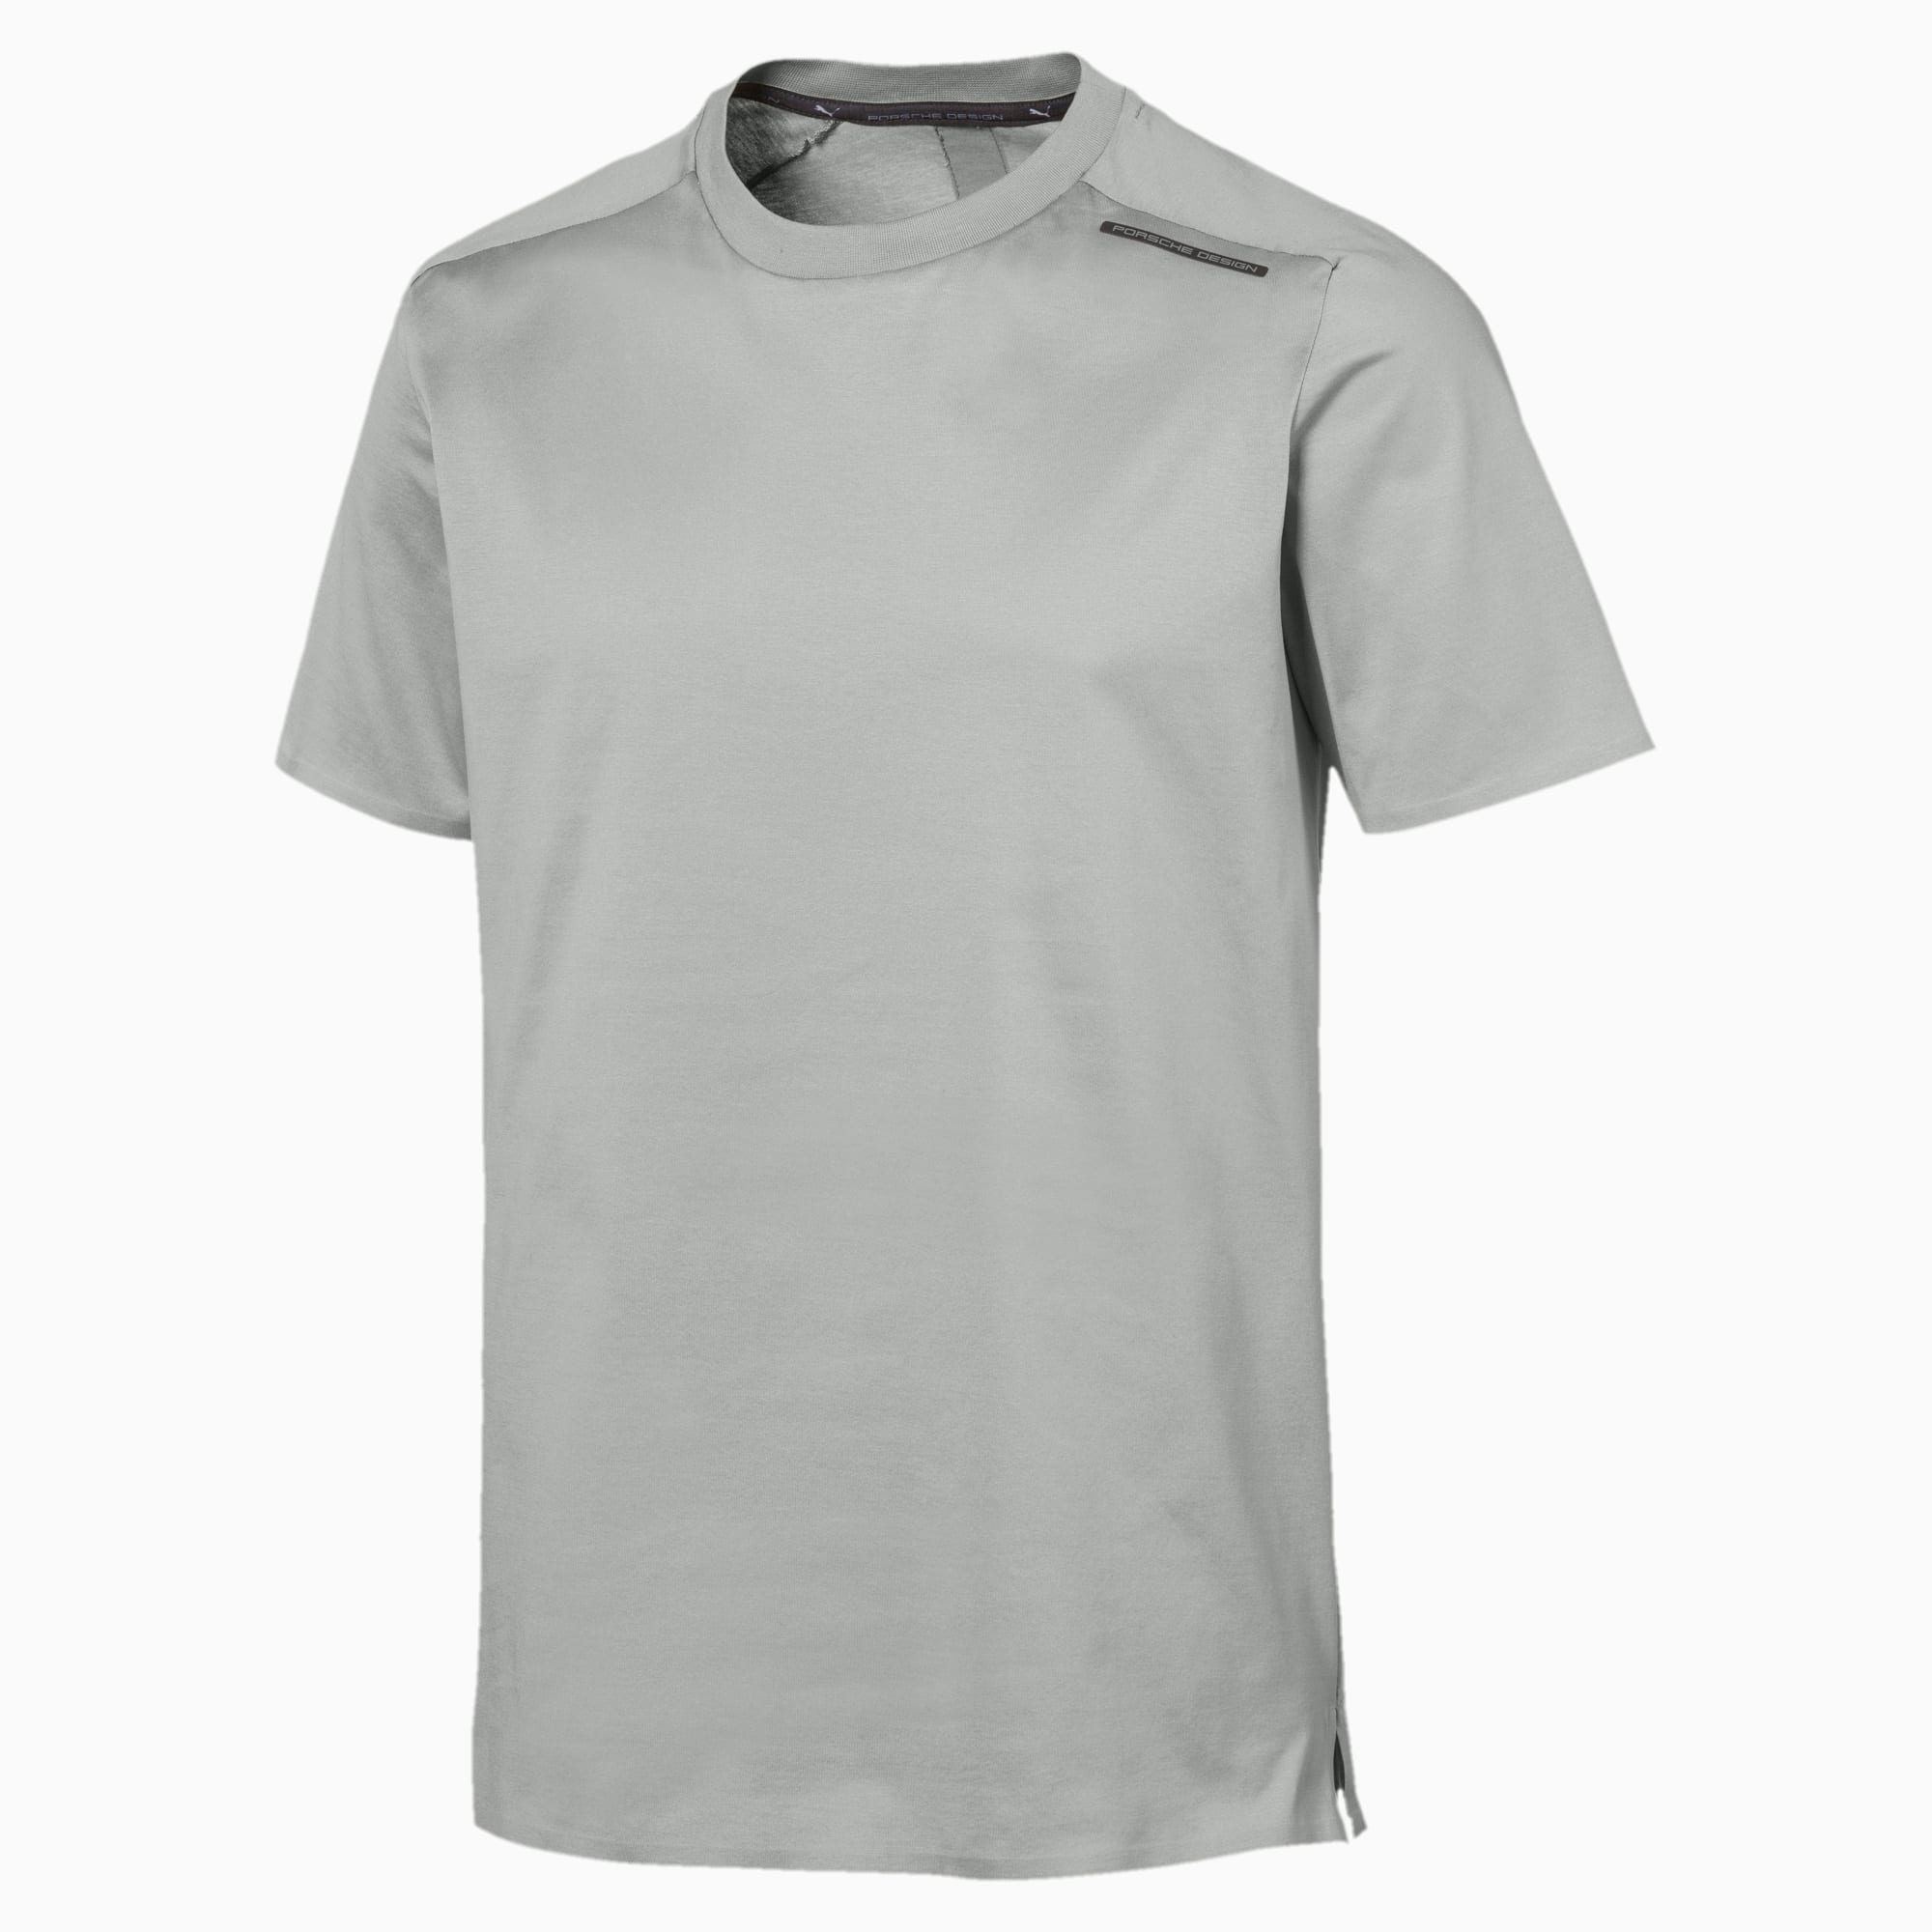 puma t shirt design